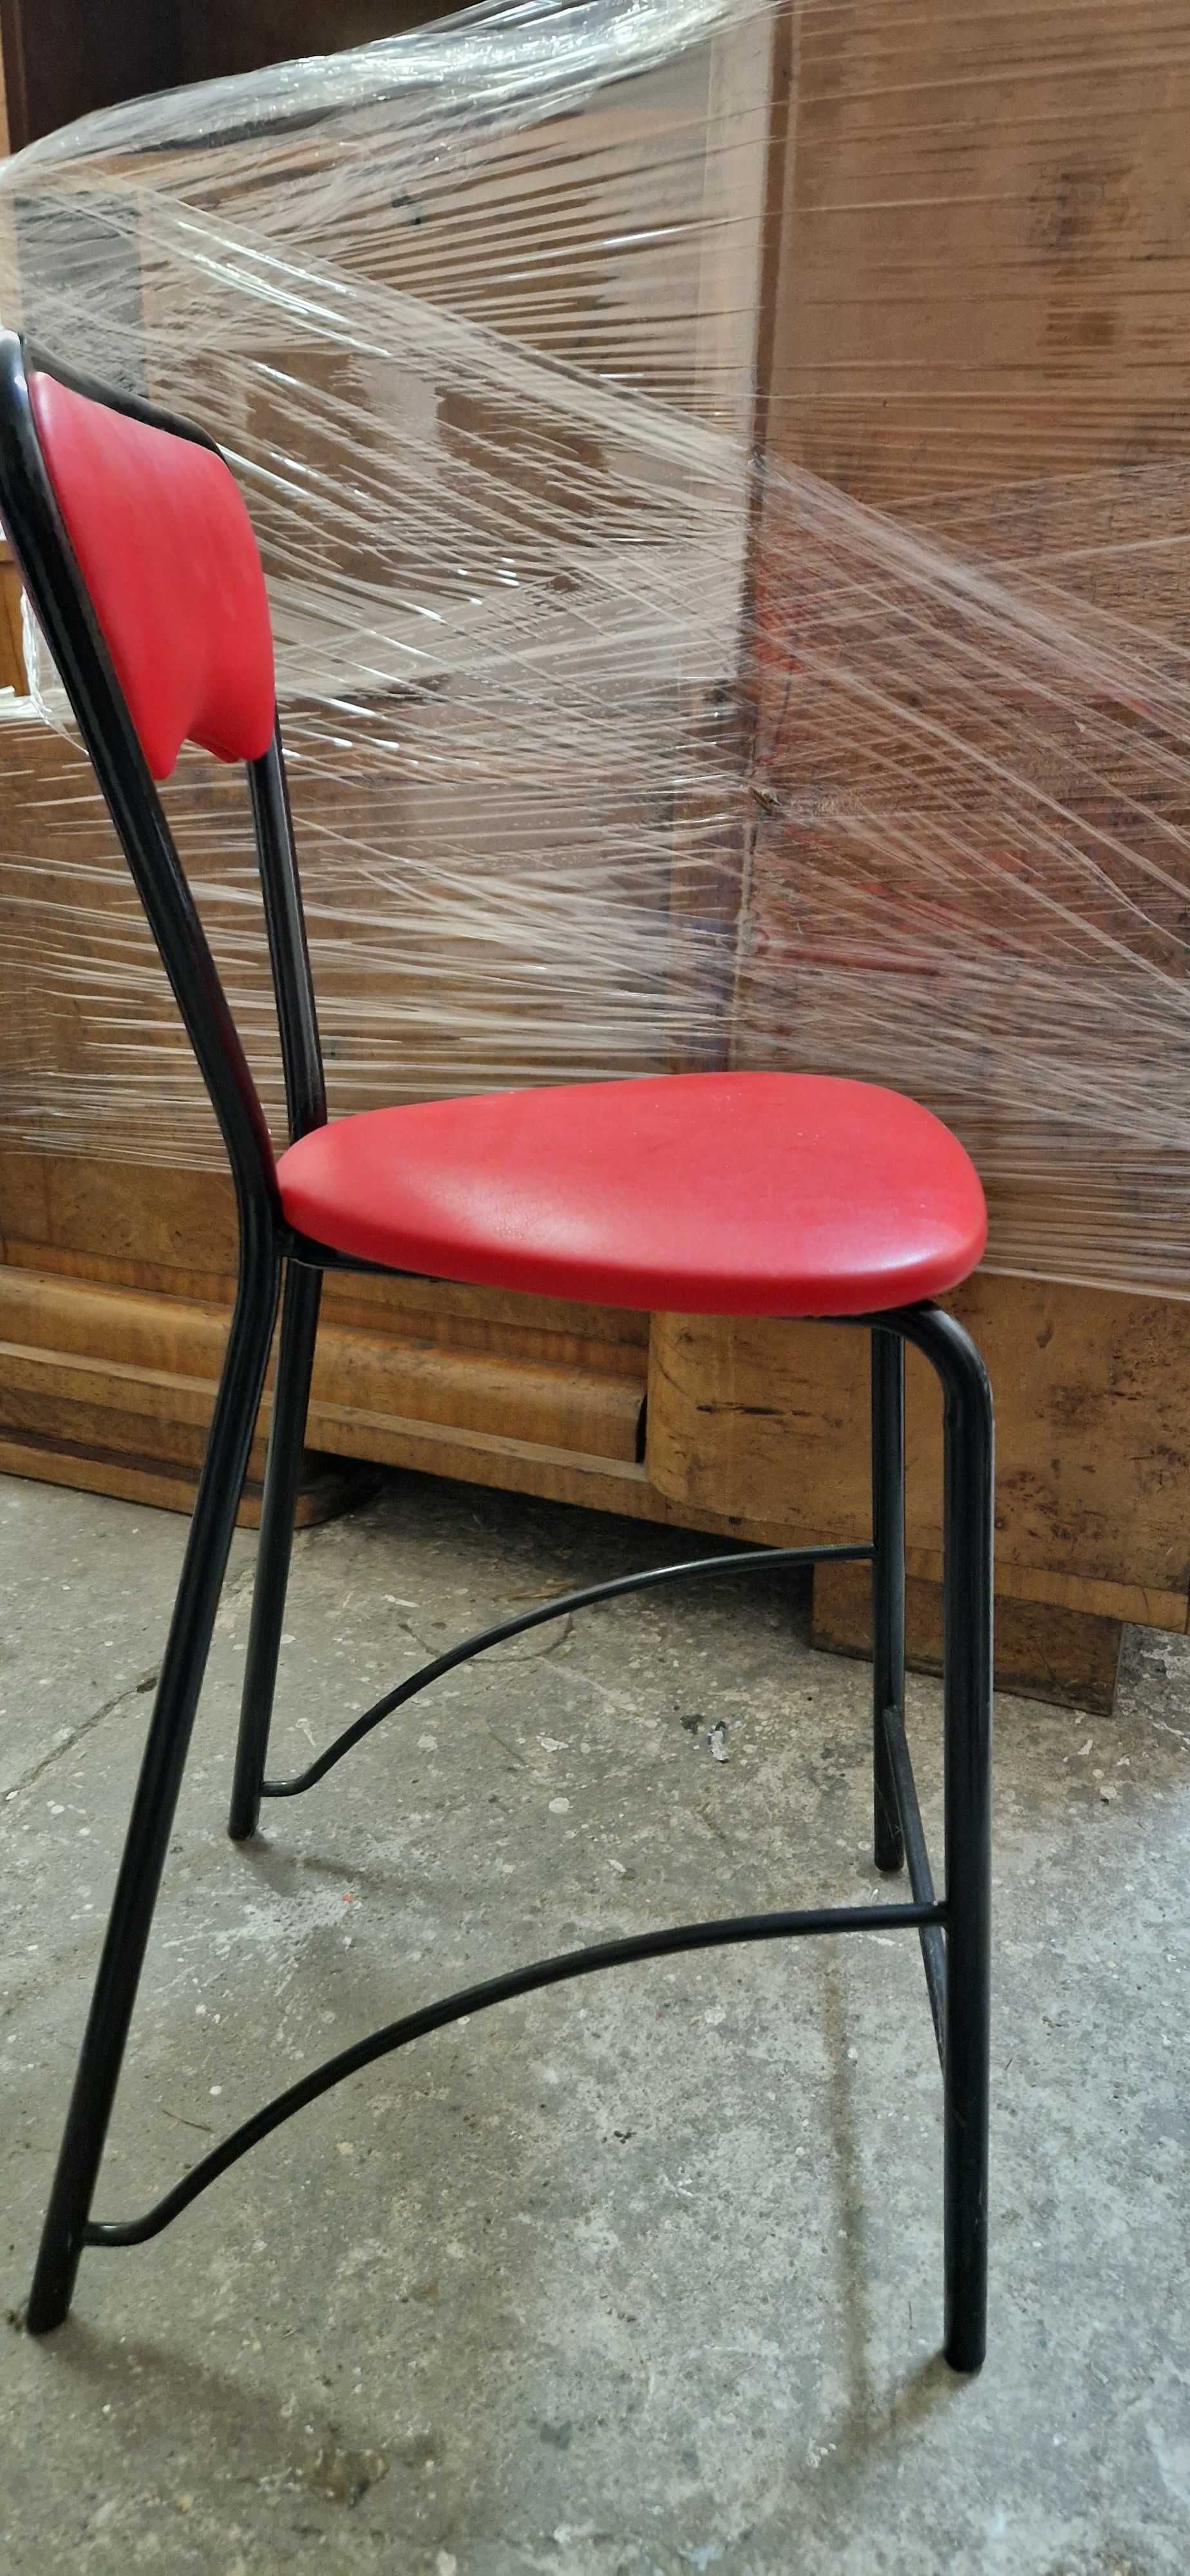 Krzesło/ holer czerwony metalowy Agata Meble